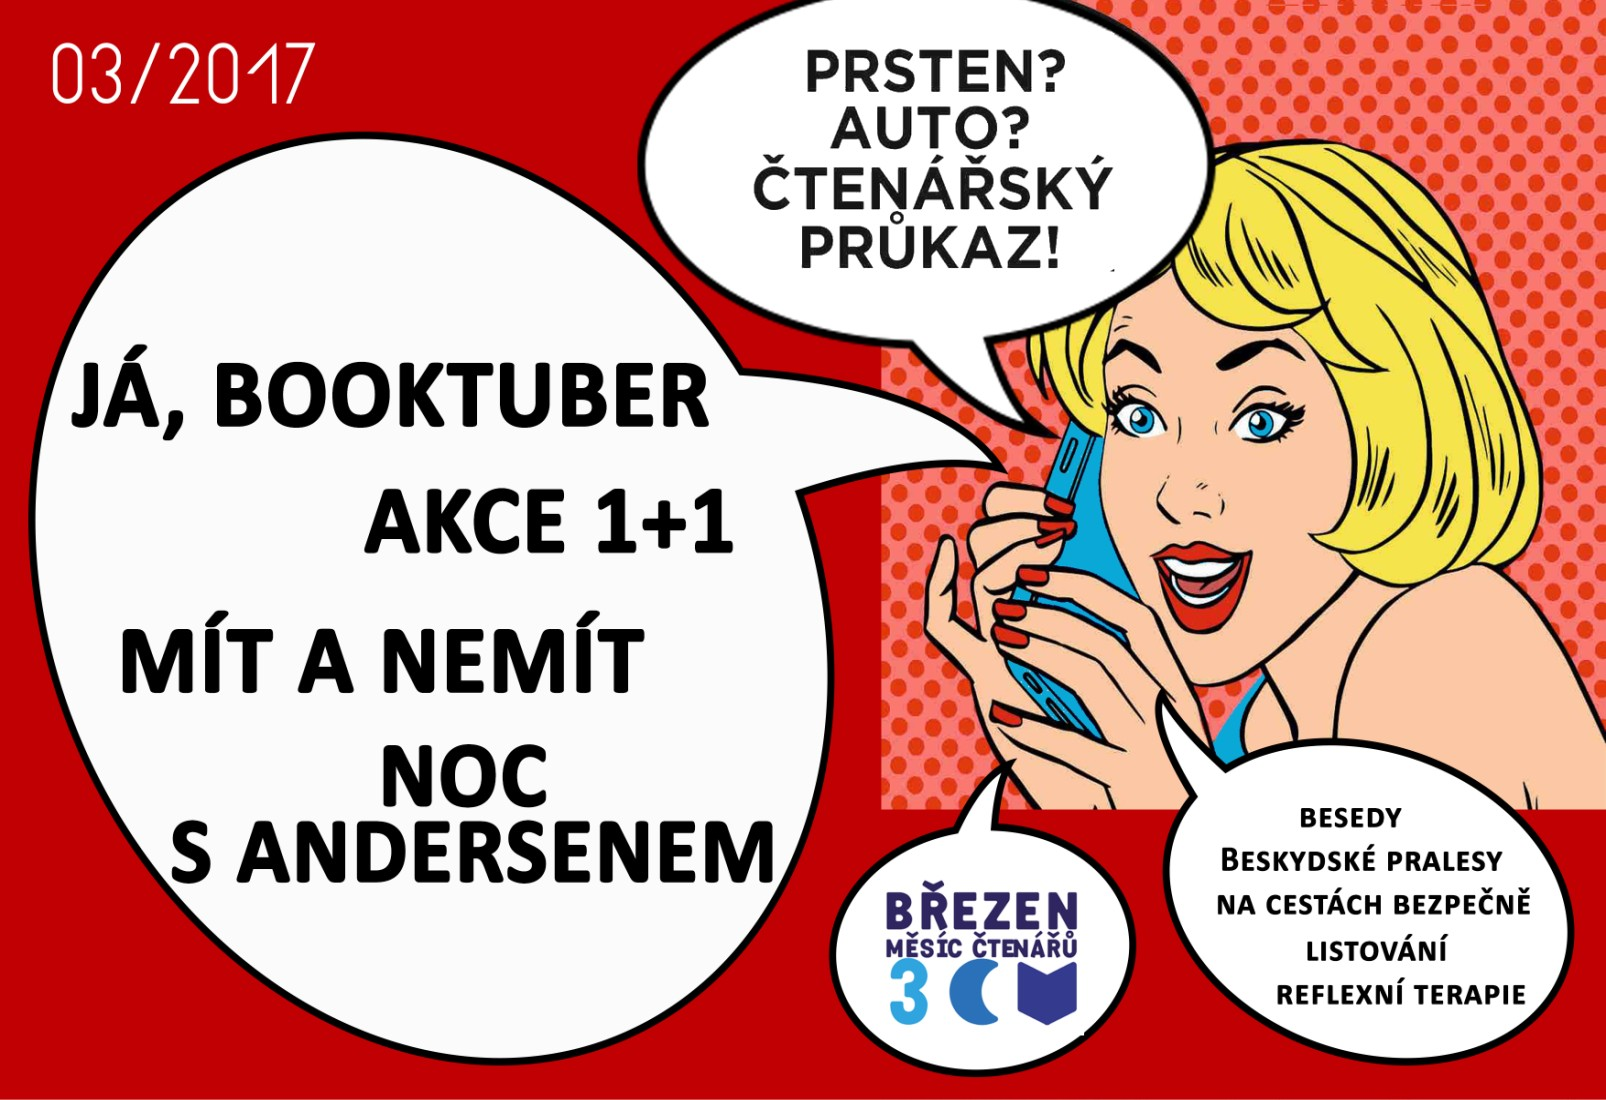 BŘEZEN MĚSÍC ČTENÁŘŮ Svaz knihovníků a informačních pracovníků vyhlašuje v roce 2017 již osmý ročník celostátní akce na podporu čtenářské gramotnosti Březen měsíc čtenářů.